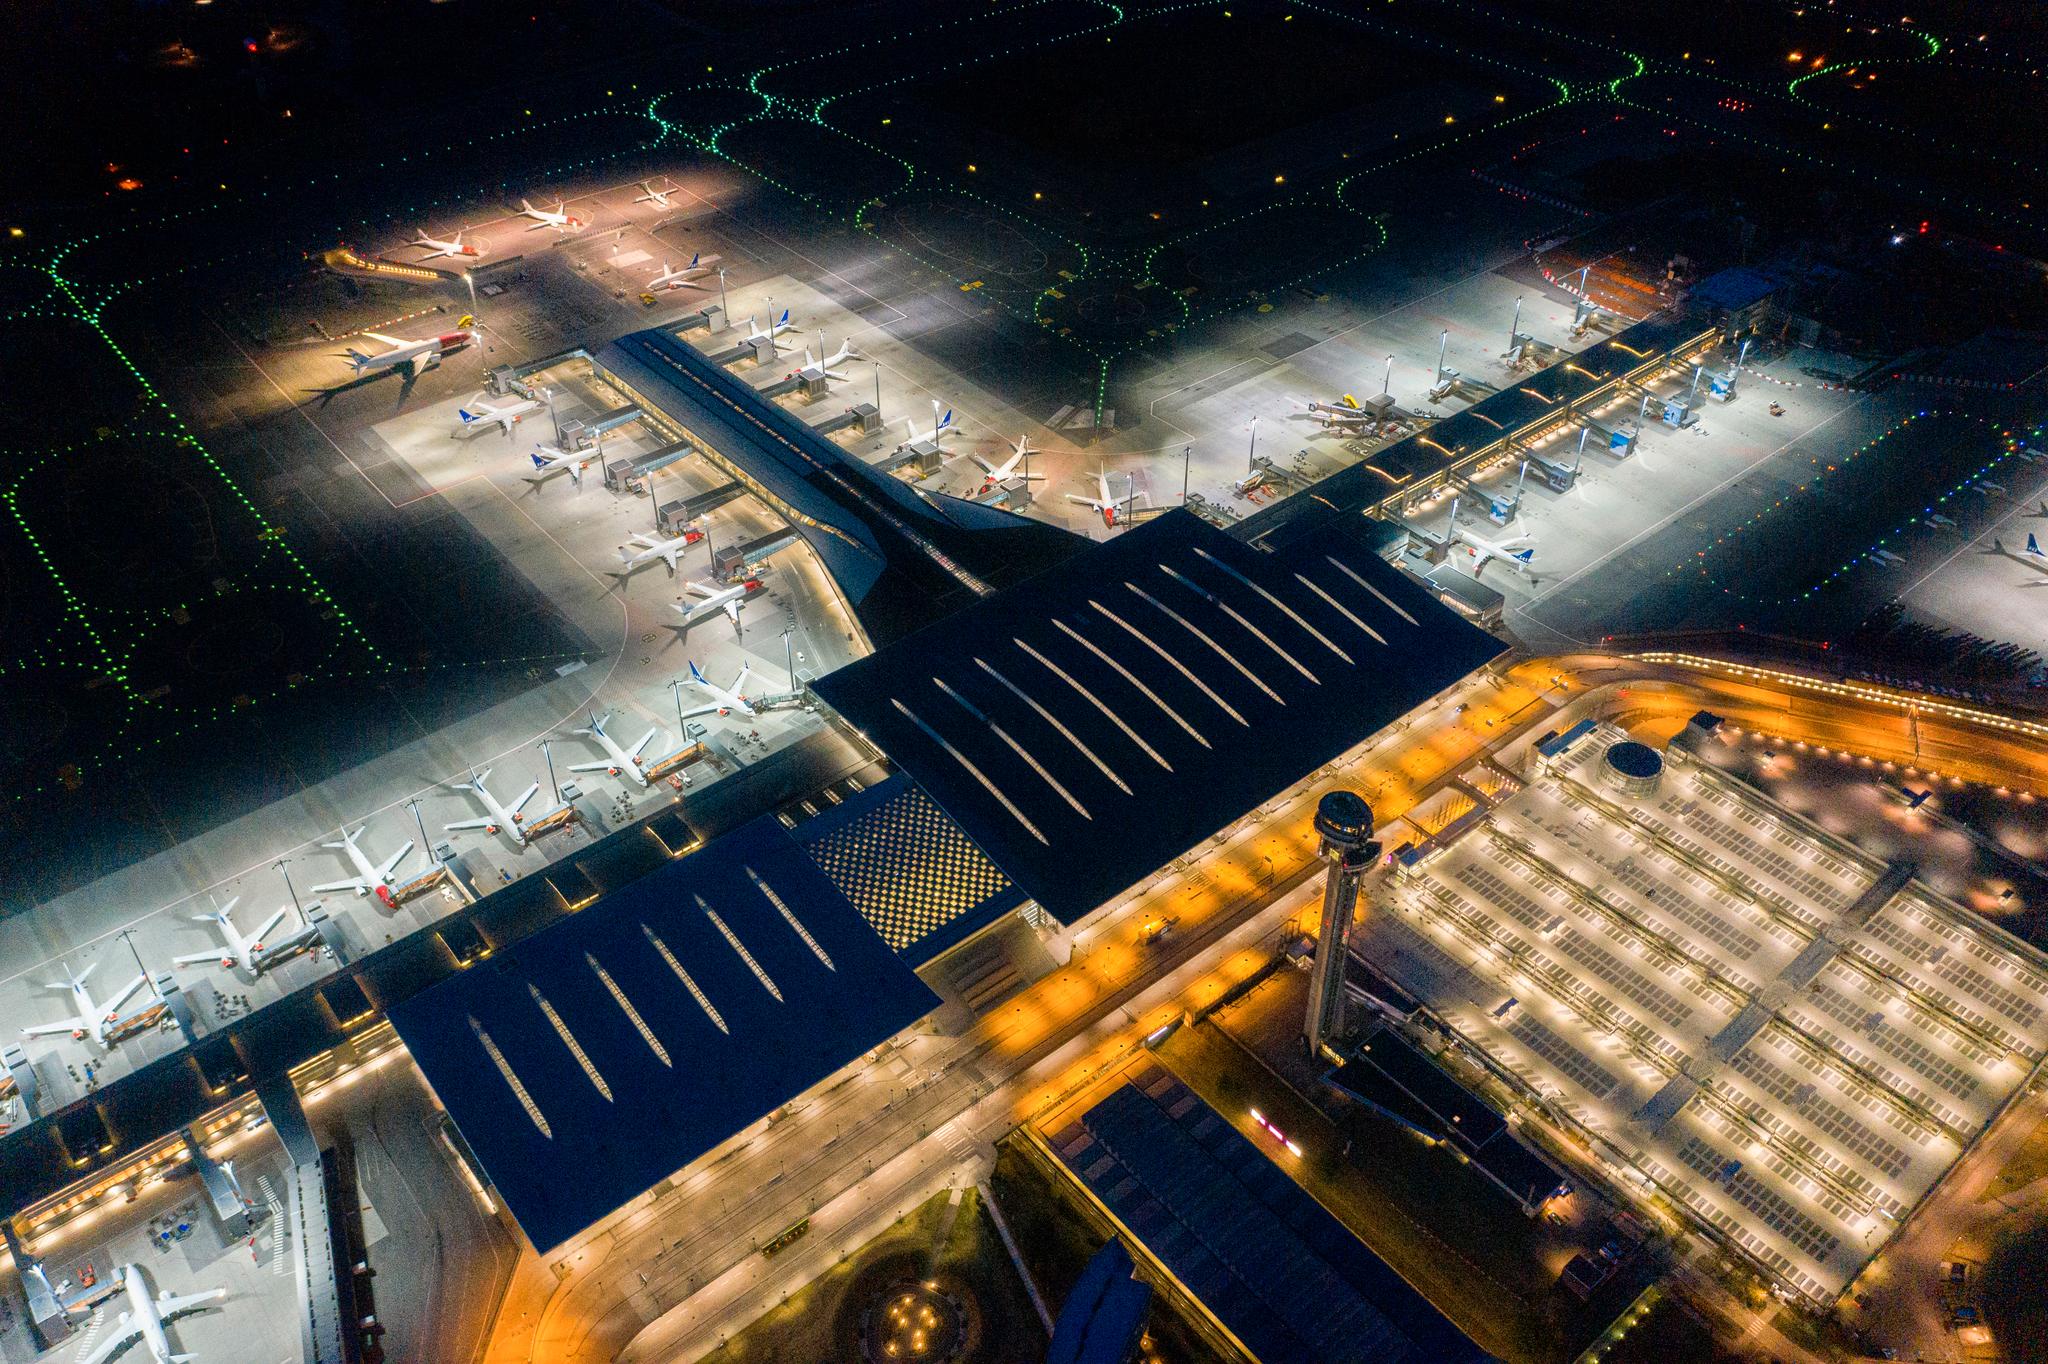 Dette dronebildet av utenlandsterminalen på Gardermoen flyplass viser at det knapt går fly. SAS’ trafikk har stupt med 95 prosent. 